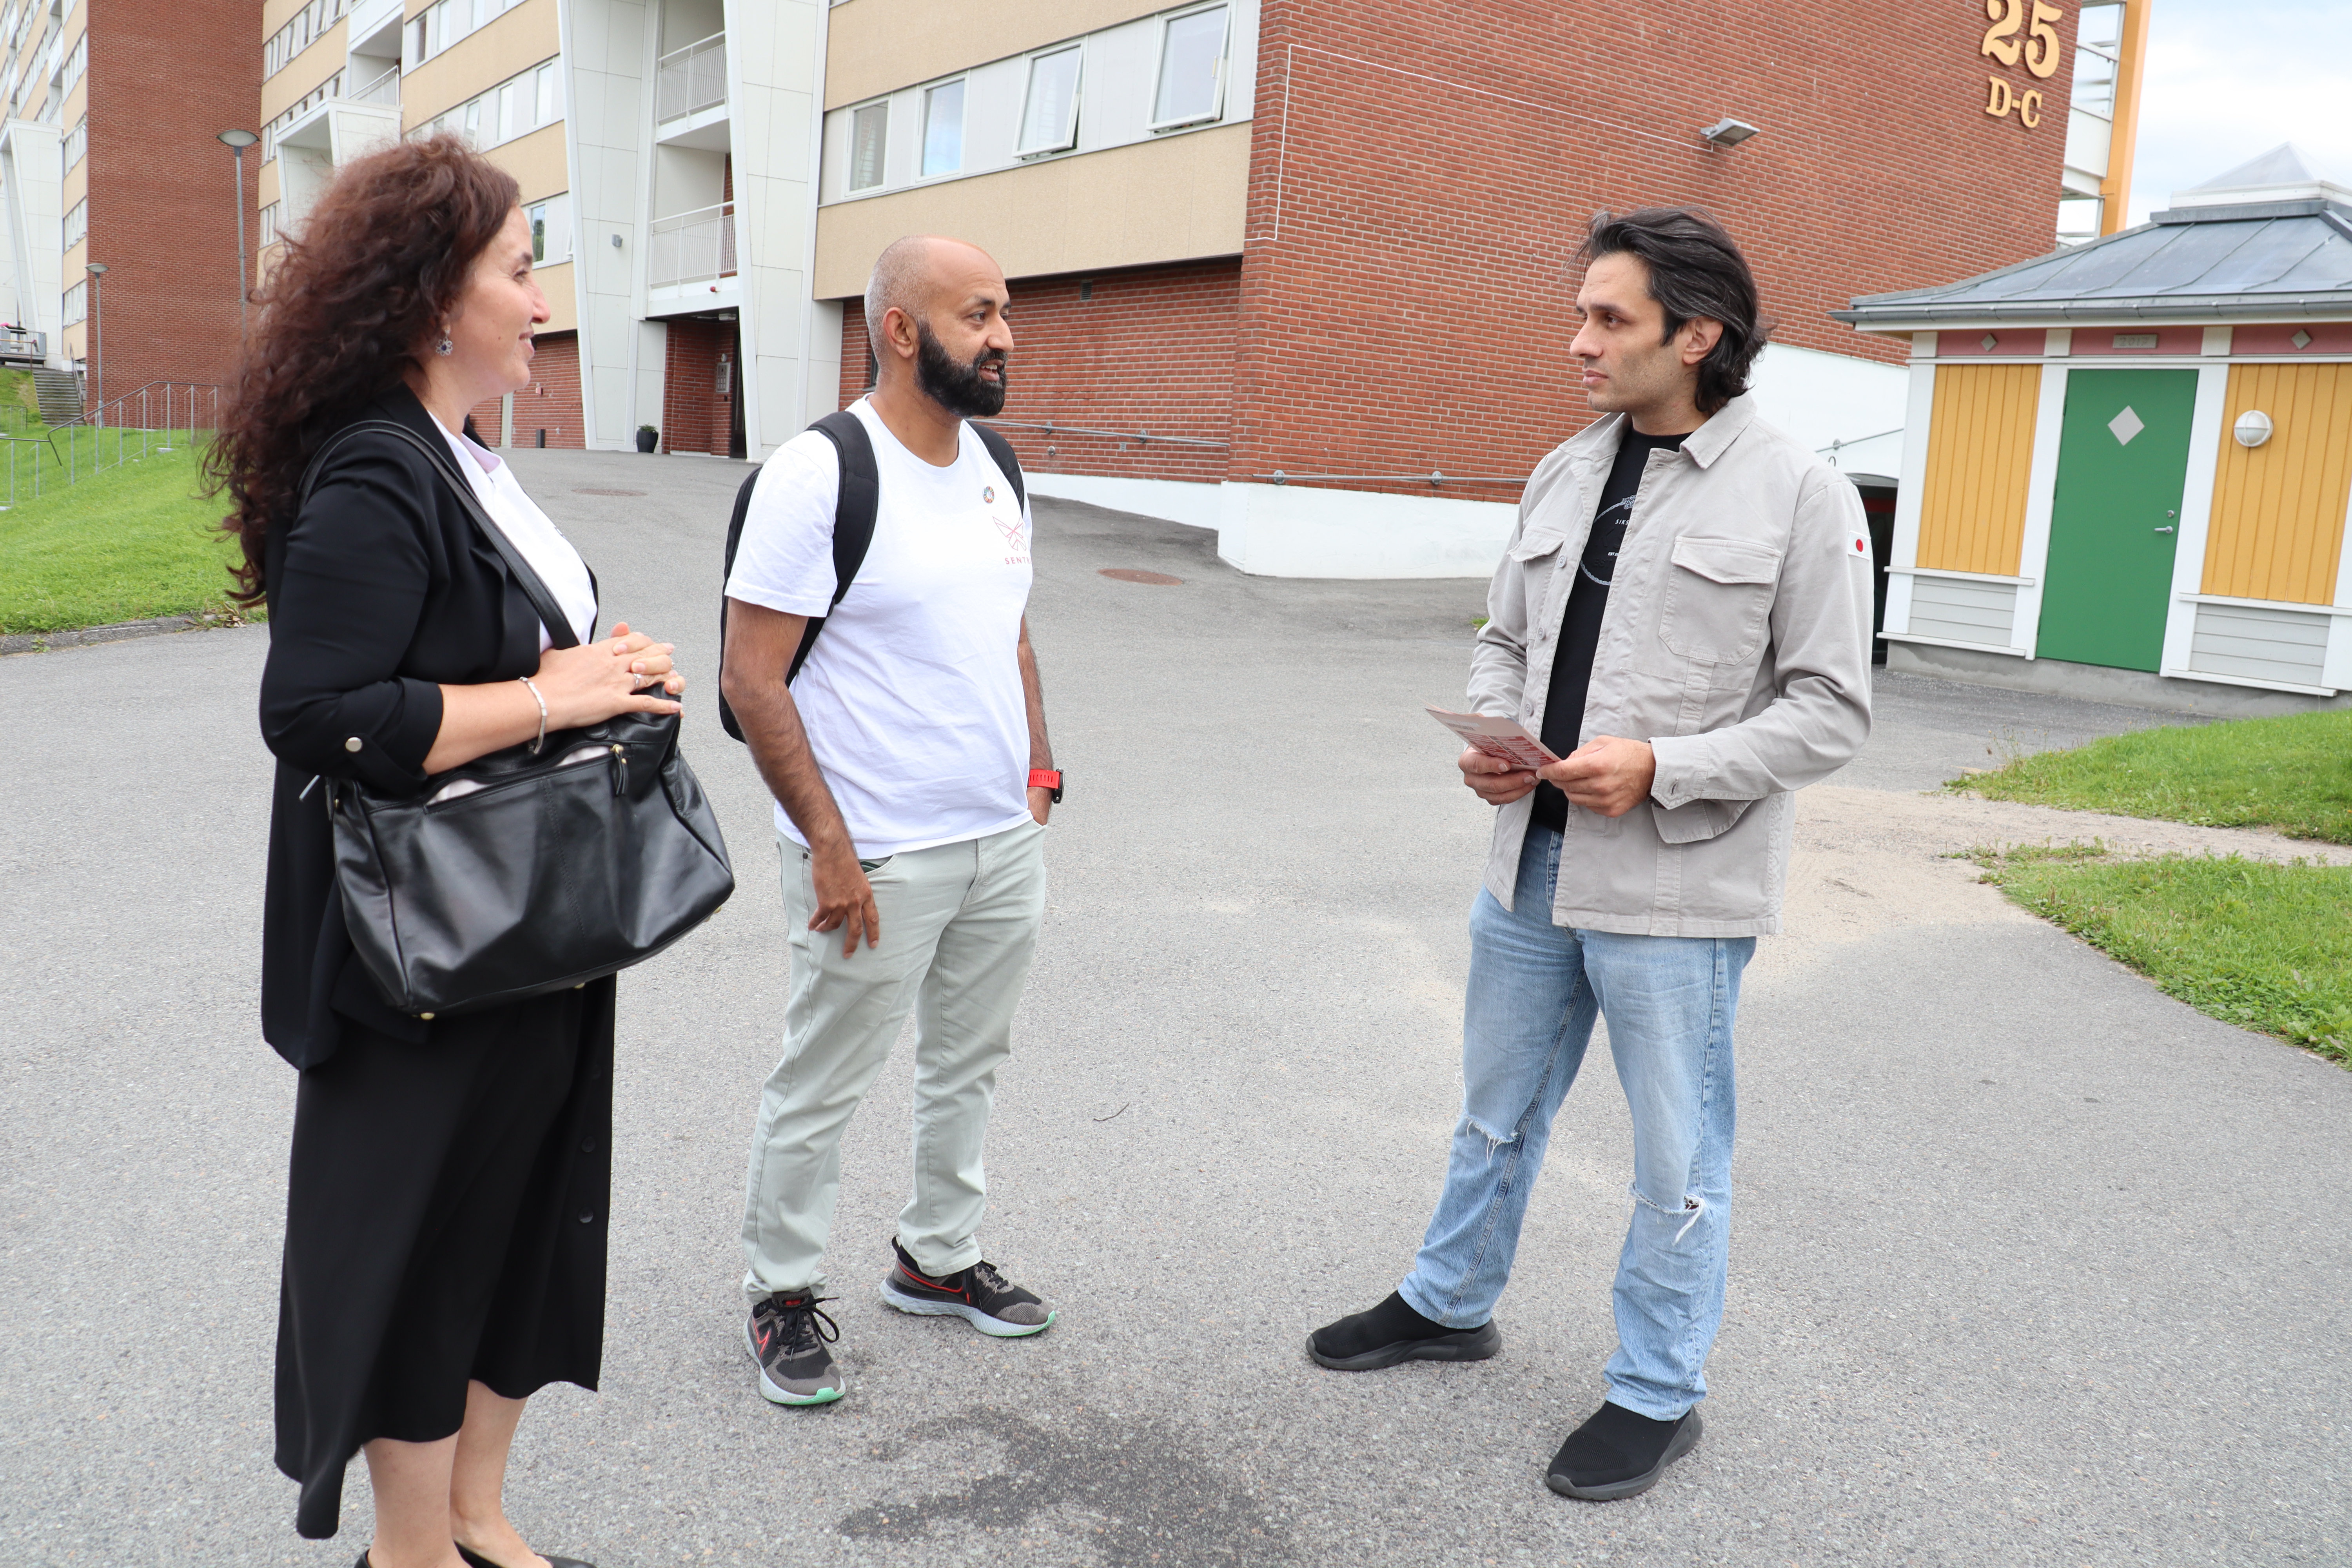 45 prosent av beboere på bydel Fjell i Drammen stemte ved sist valg. Hatice Luk, Sajid Mukhtar og Hetem Tug håper at flere stemmer i årets valg.